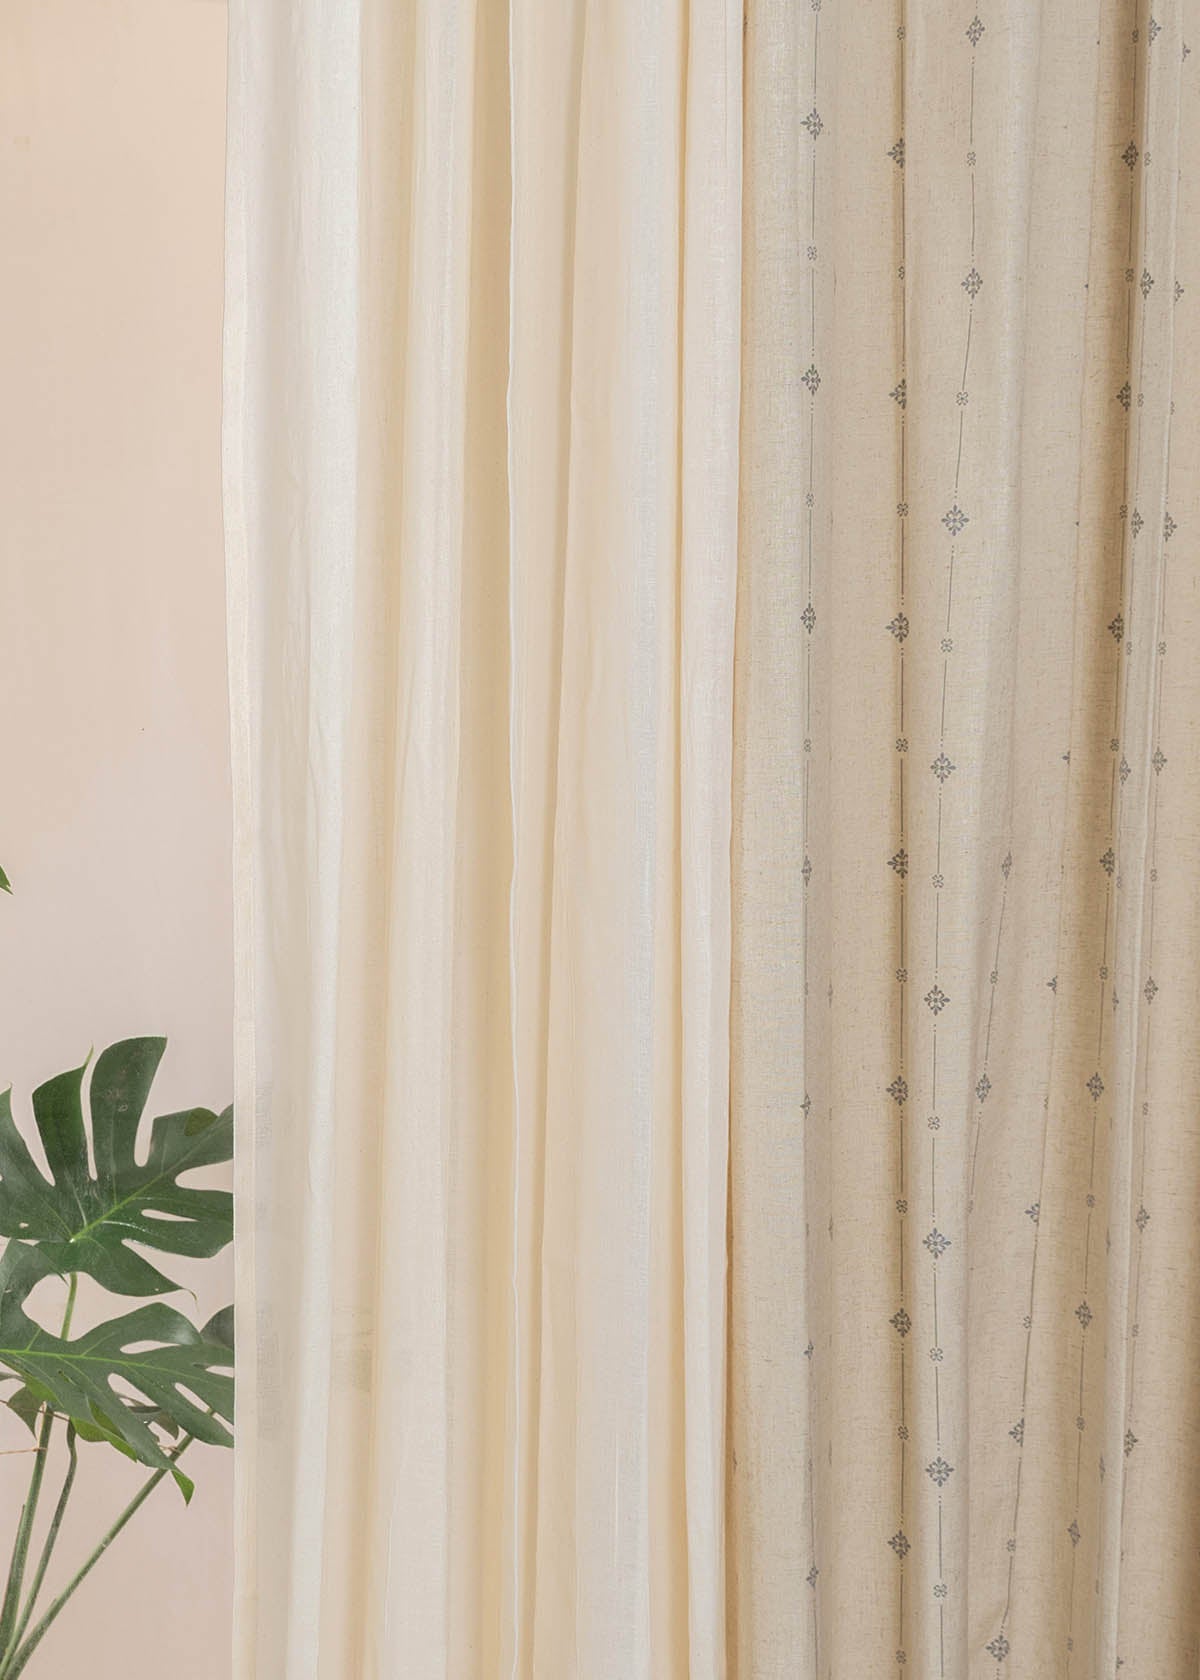 Tulsi Linen, Cream Sheer Set Of 4 Combo Cotton Curtain - Cream